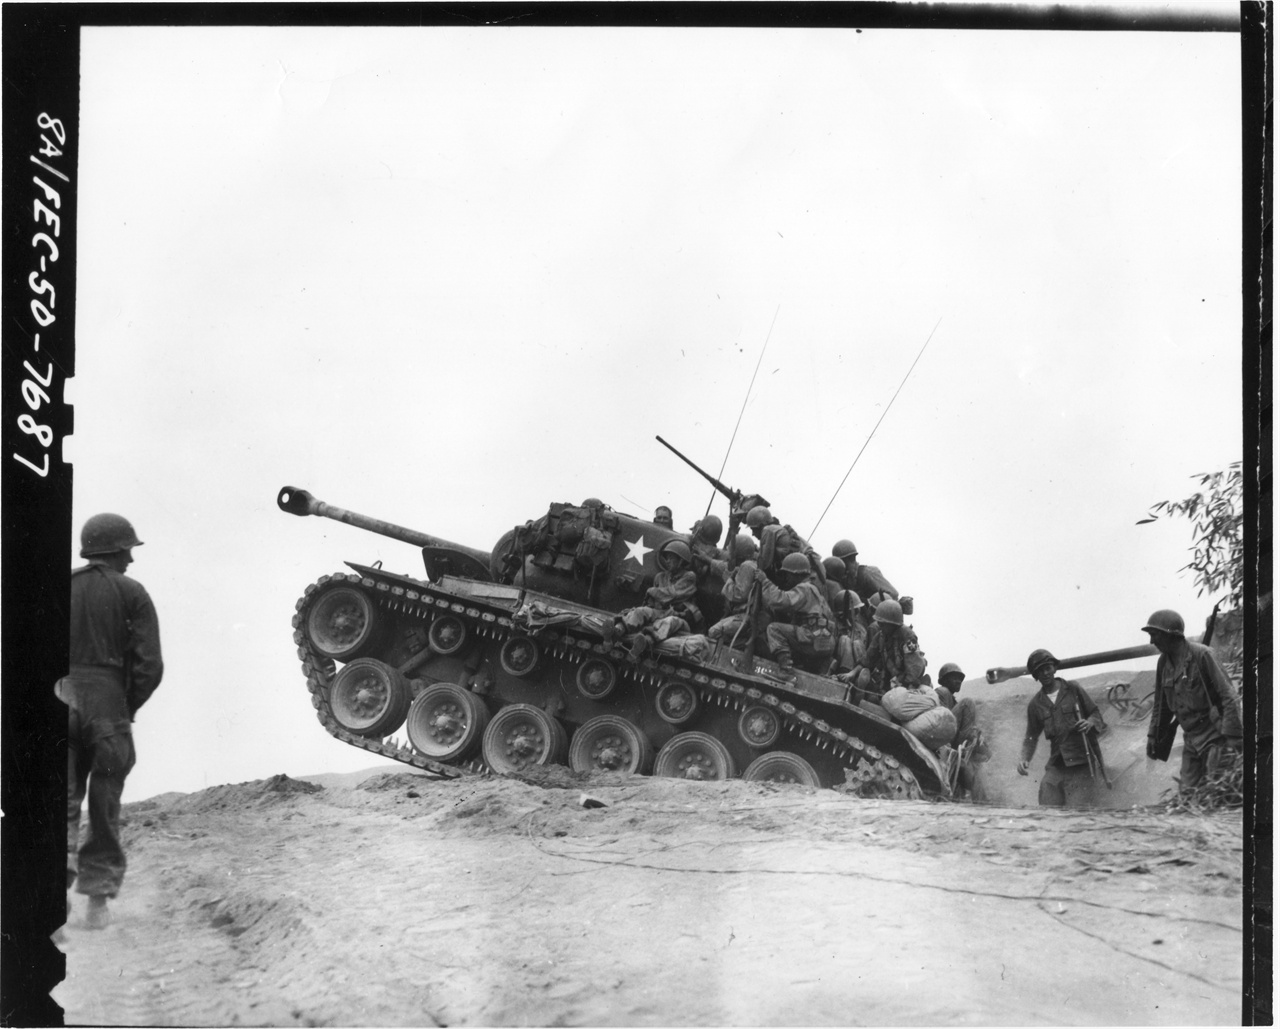  1950. 9. 3. 미 전차부대가 낙동강 전선에서 인민군 진지를 향해 돌진하고 있다.